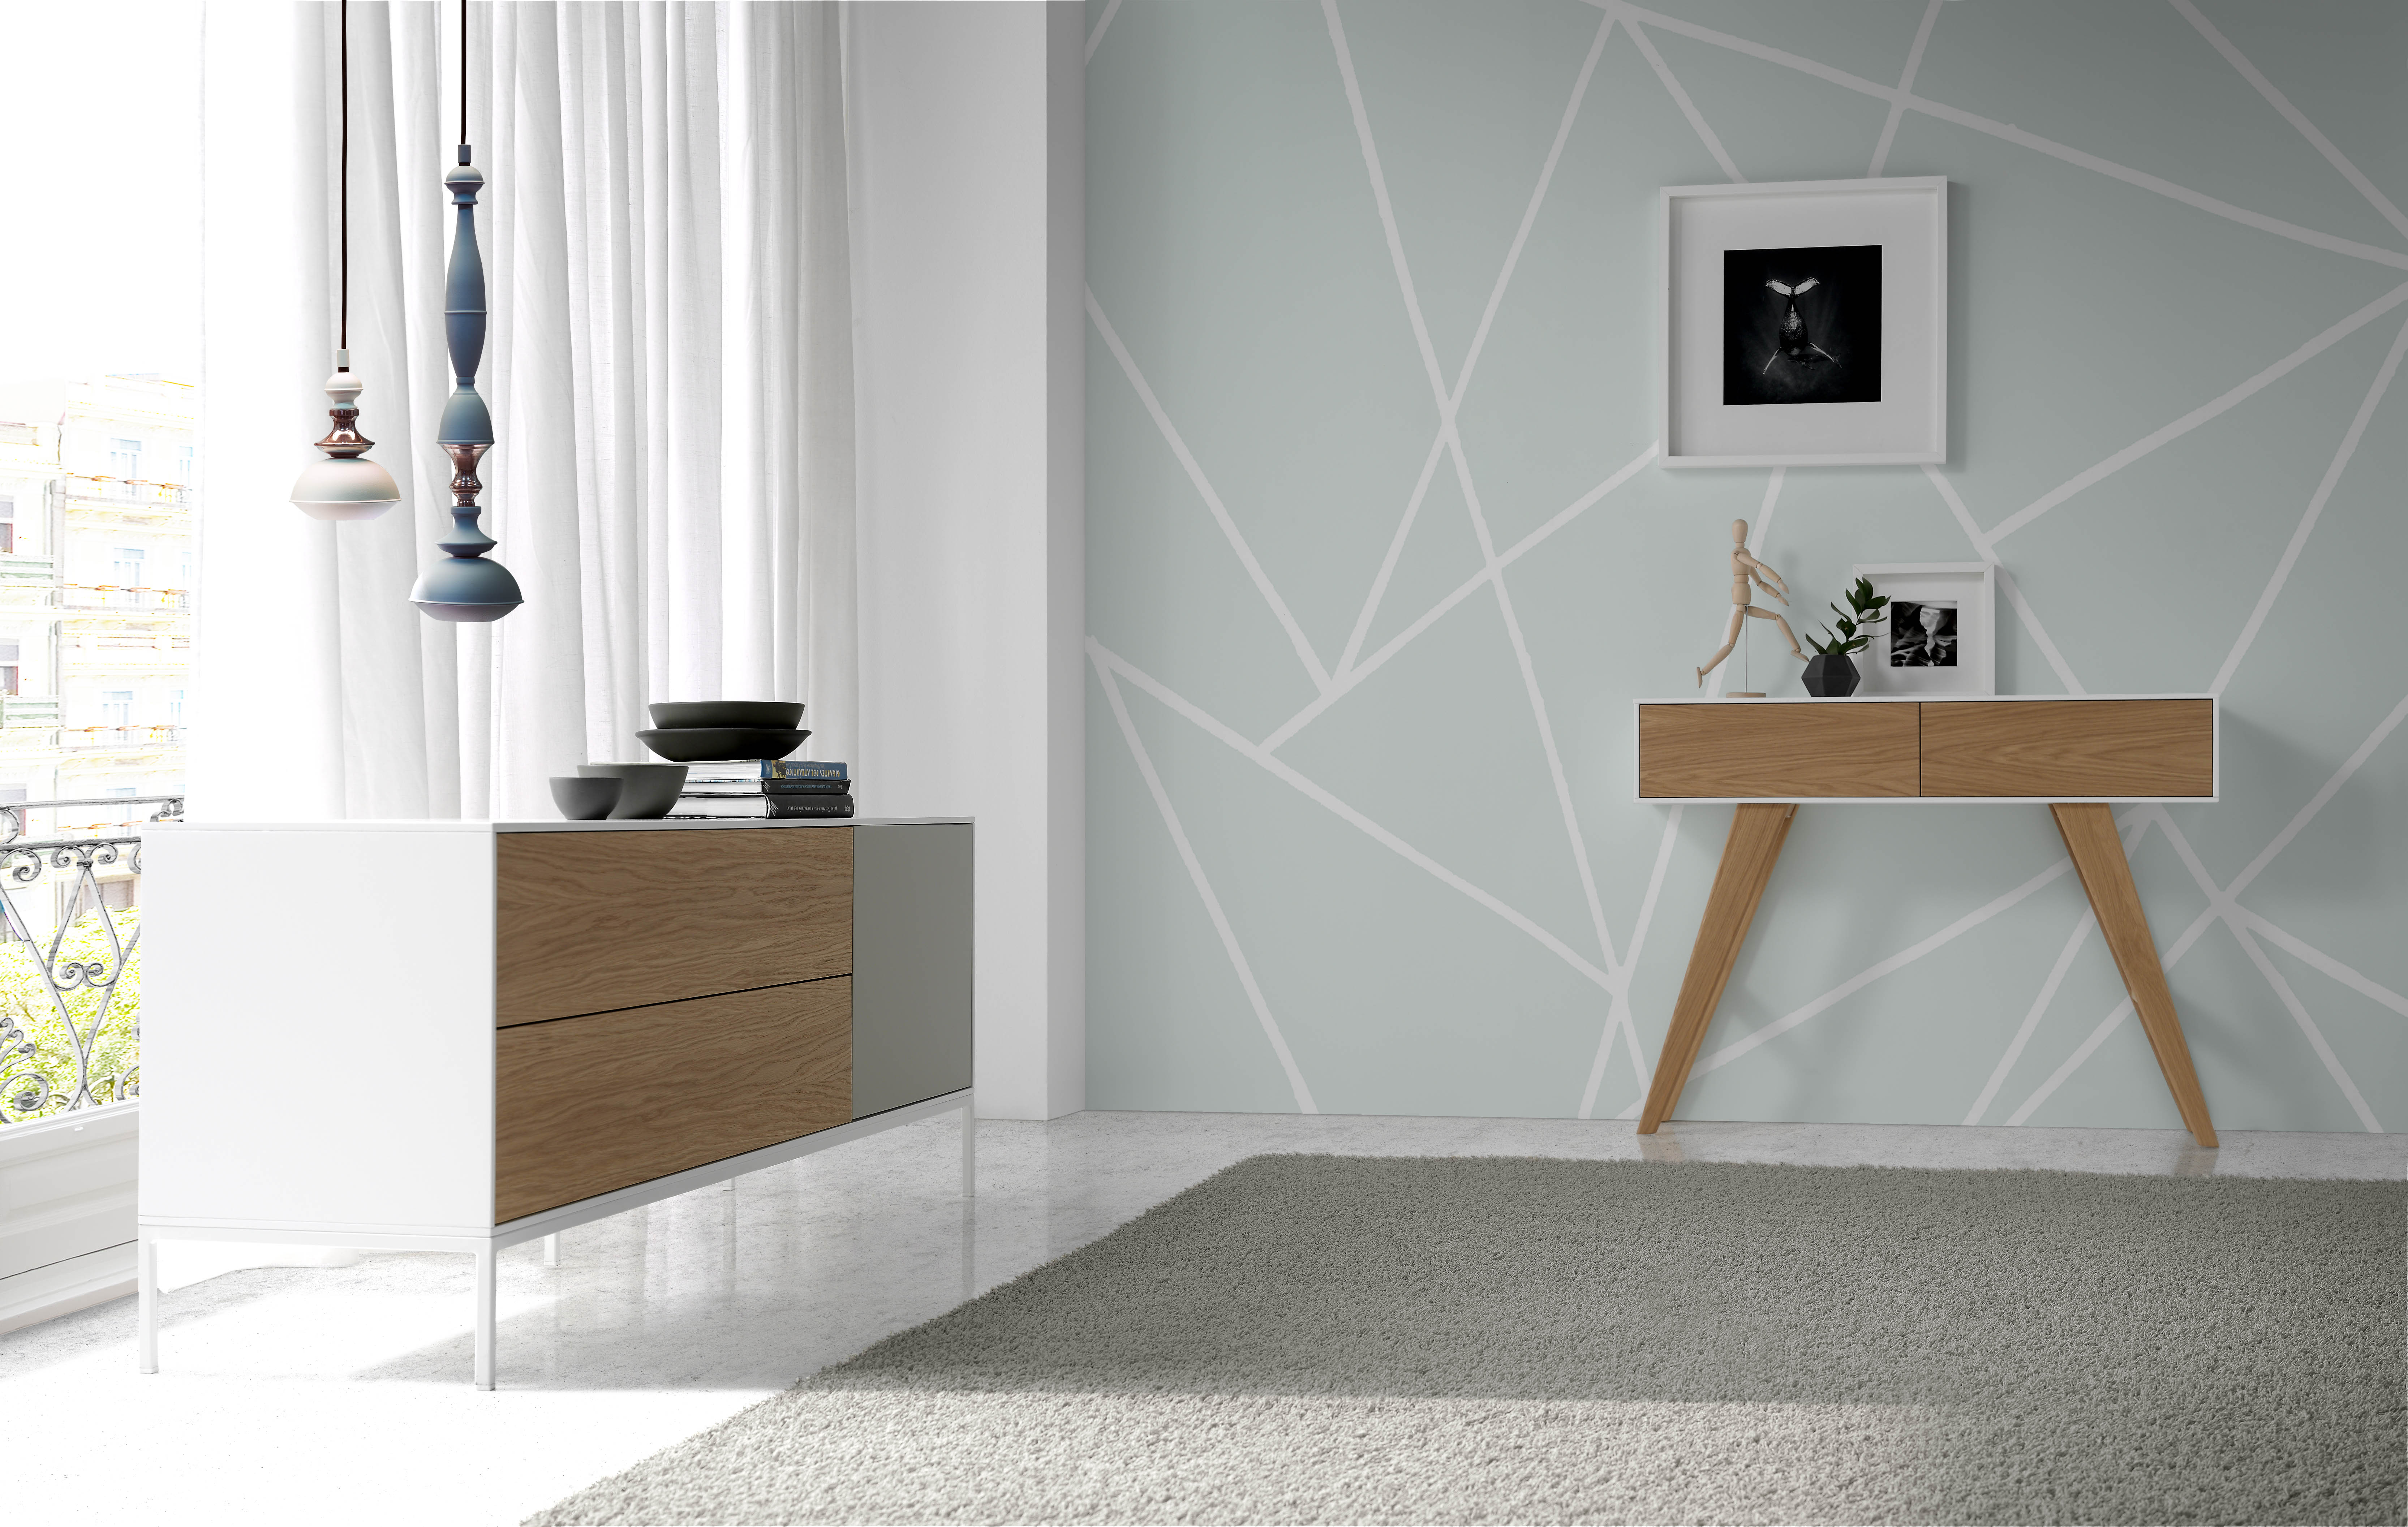 muebles de diseño Angel Cerdá